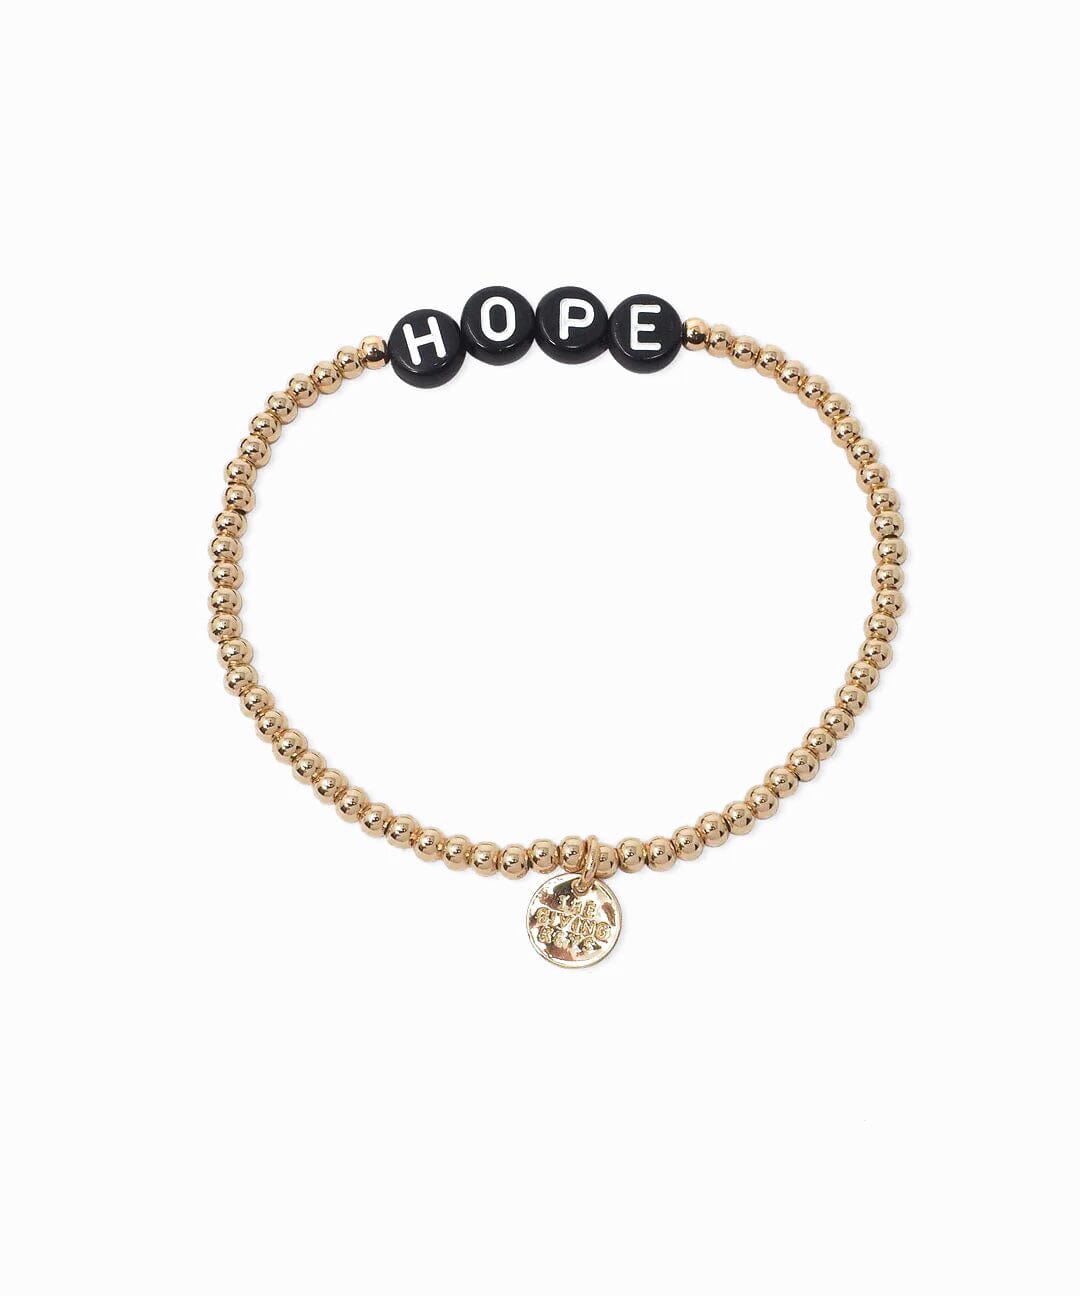 HOPE Beaded Bracelet Bracelets The Giving Keys GOLD 